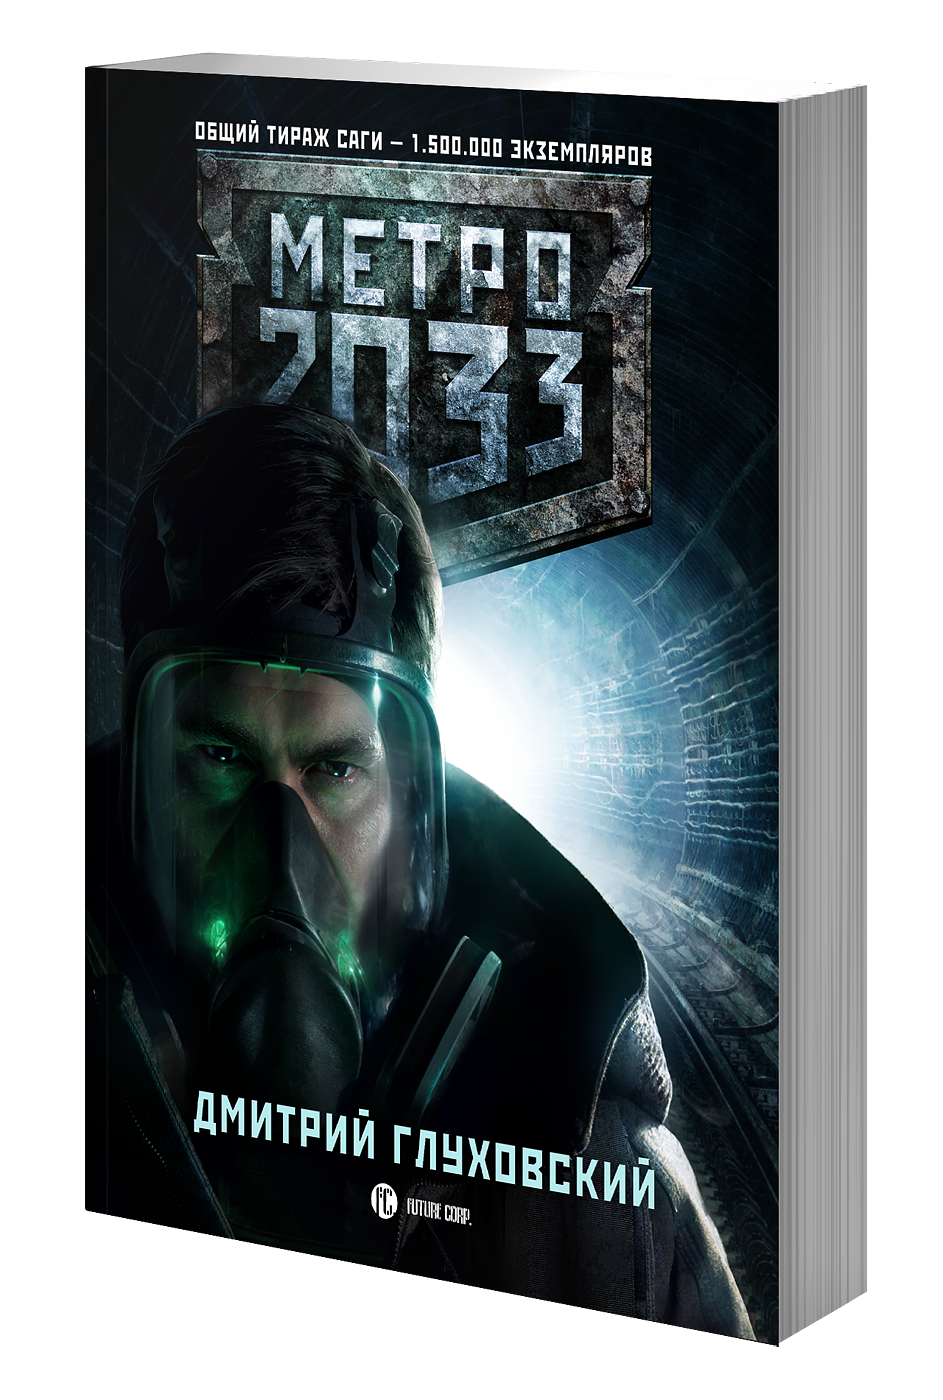 Фильм по вселенной «метро 2033» с участием глуховского — рассказываем, что нас ждет